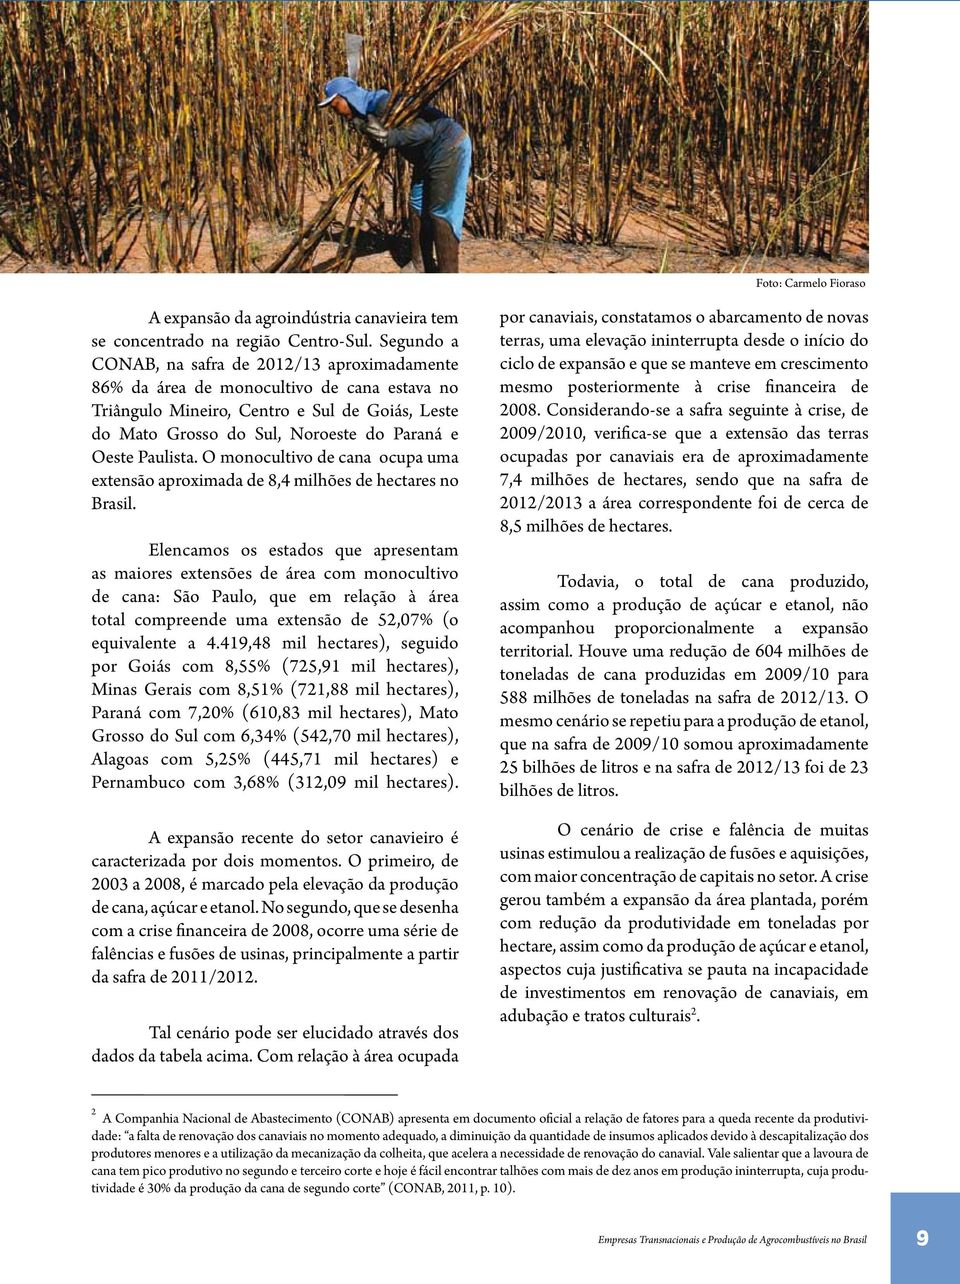 Paulista. O monocultivo de cana ocupa uma extensão aproximada de 8,4 milhões de hectares no Brasil.